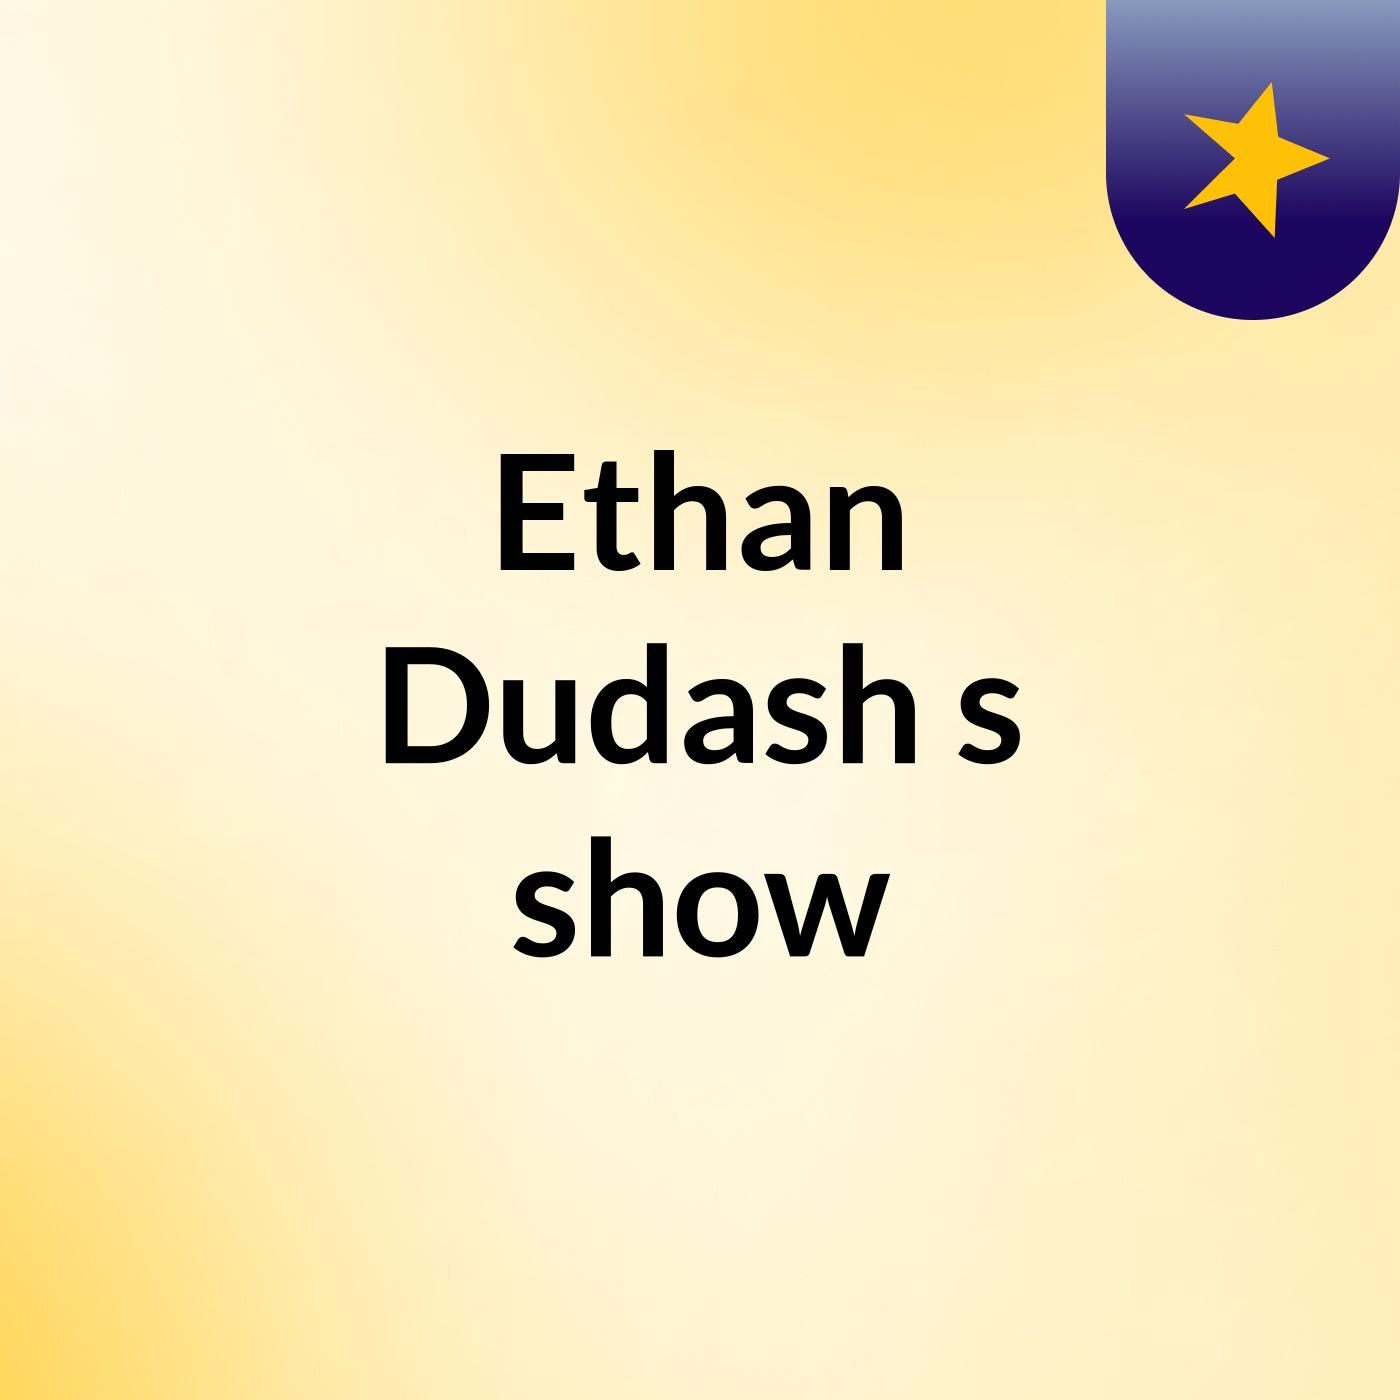 Ethan Dudash's show